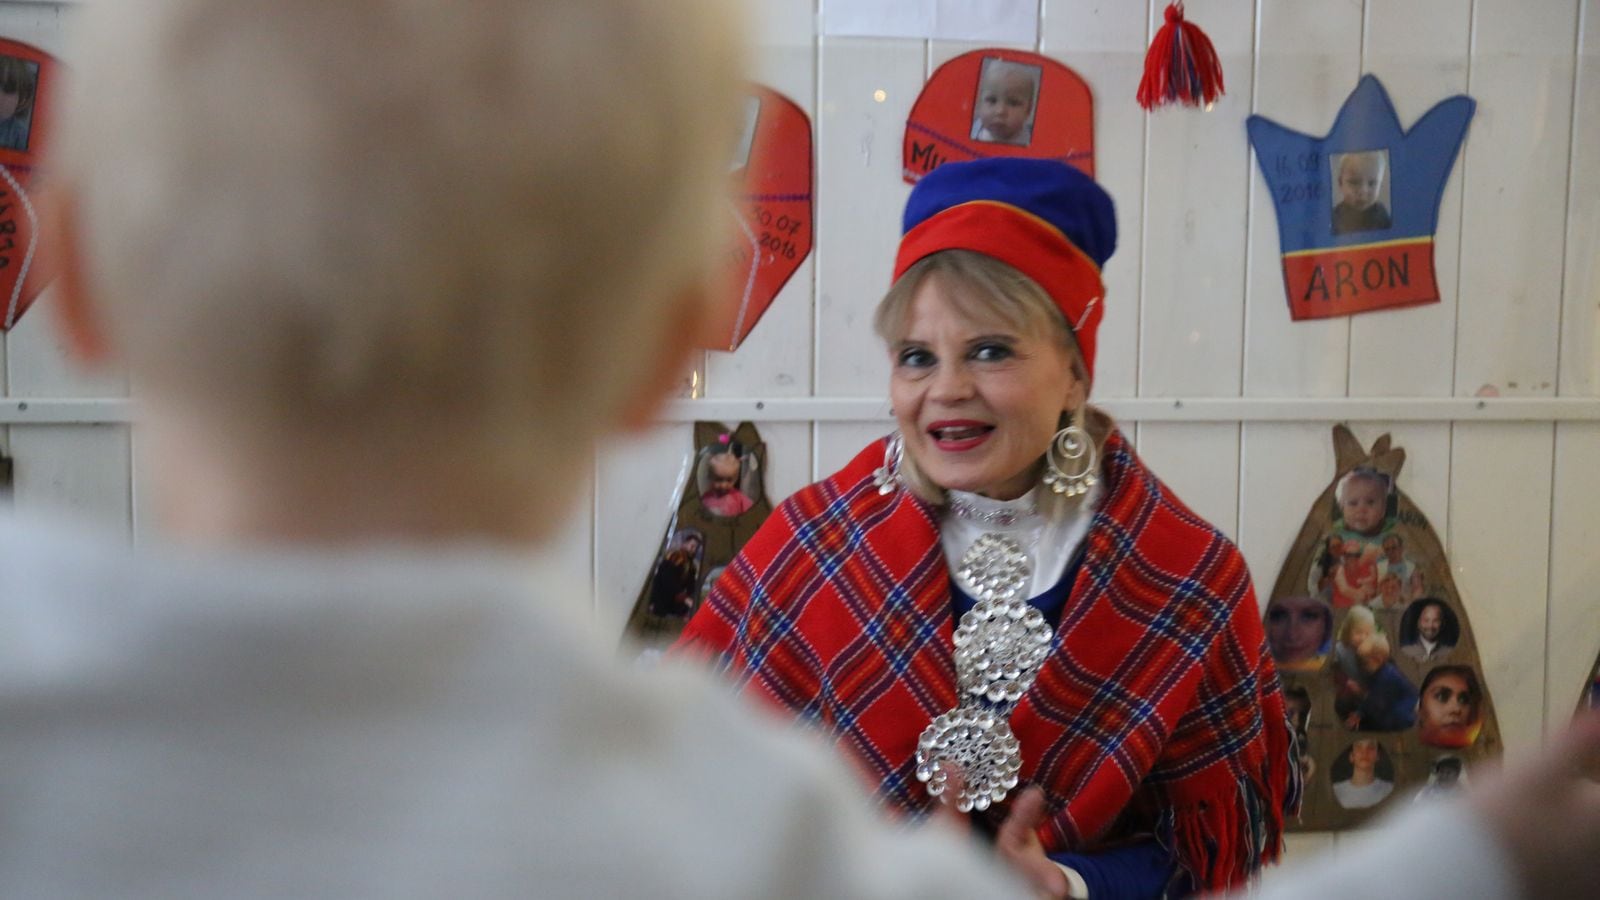 Kvinne i samedrakt i samisk barnehage i Oslo forteller historier til barna. Man ser ryggen av et barn i bildet.